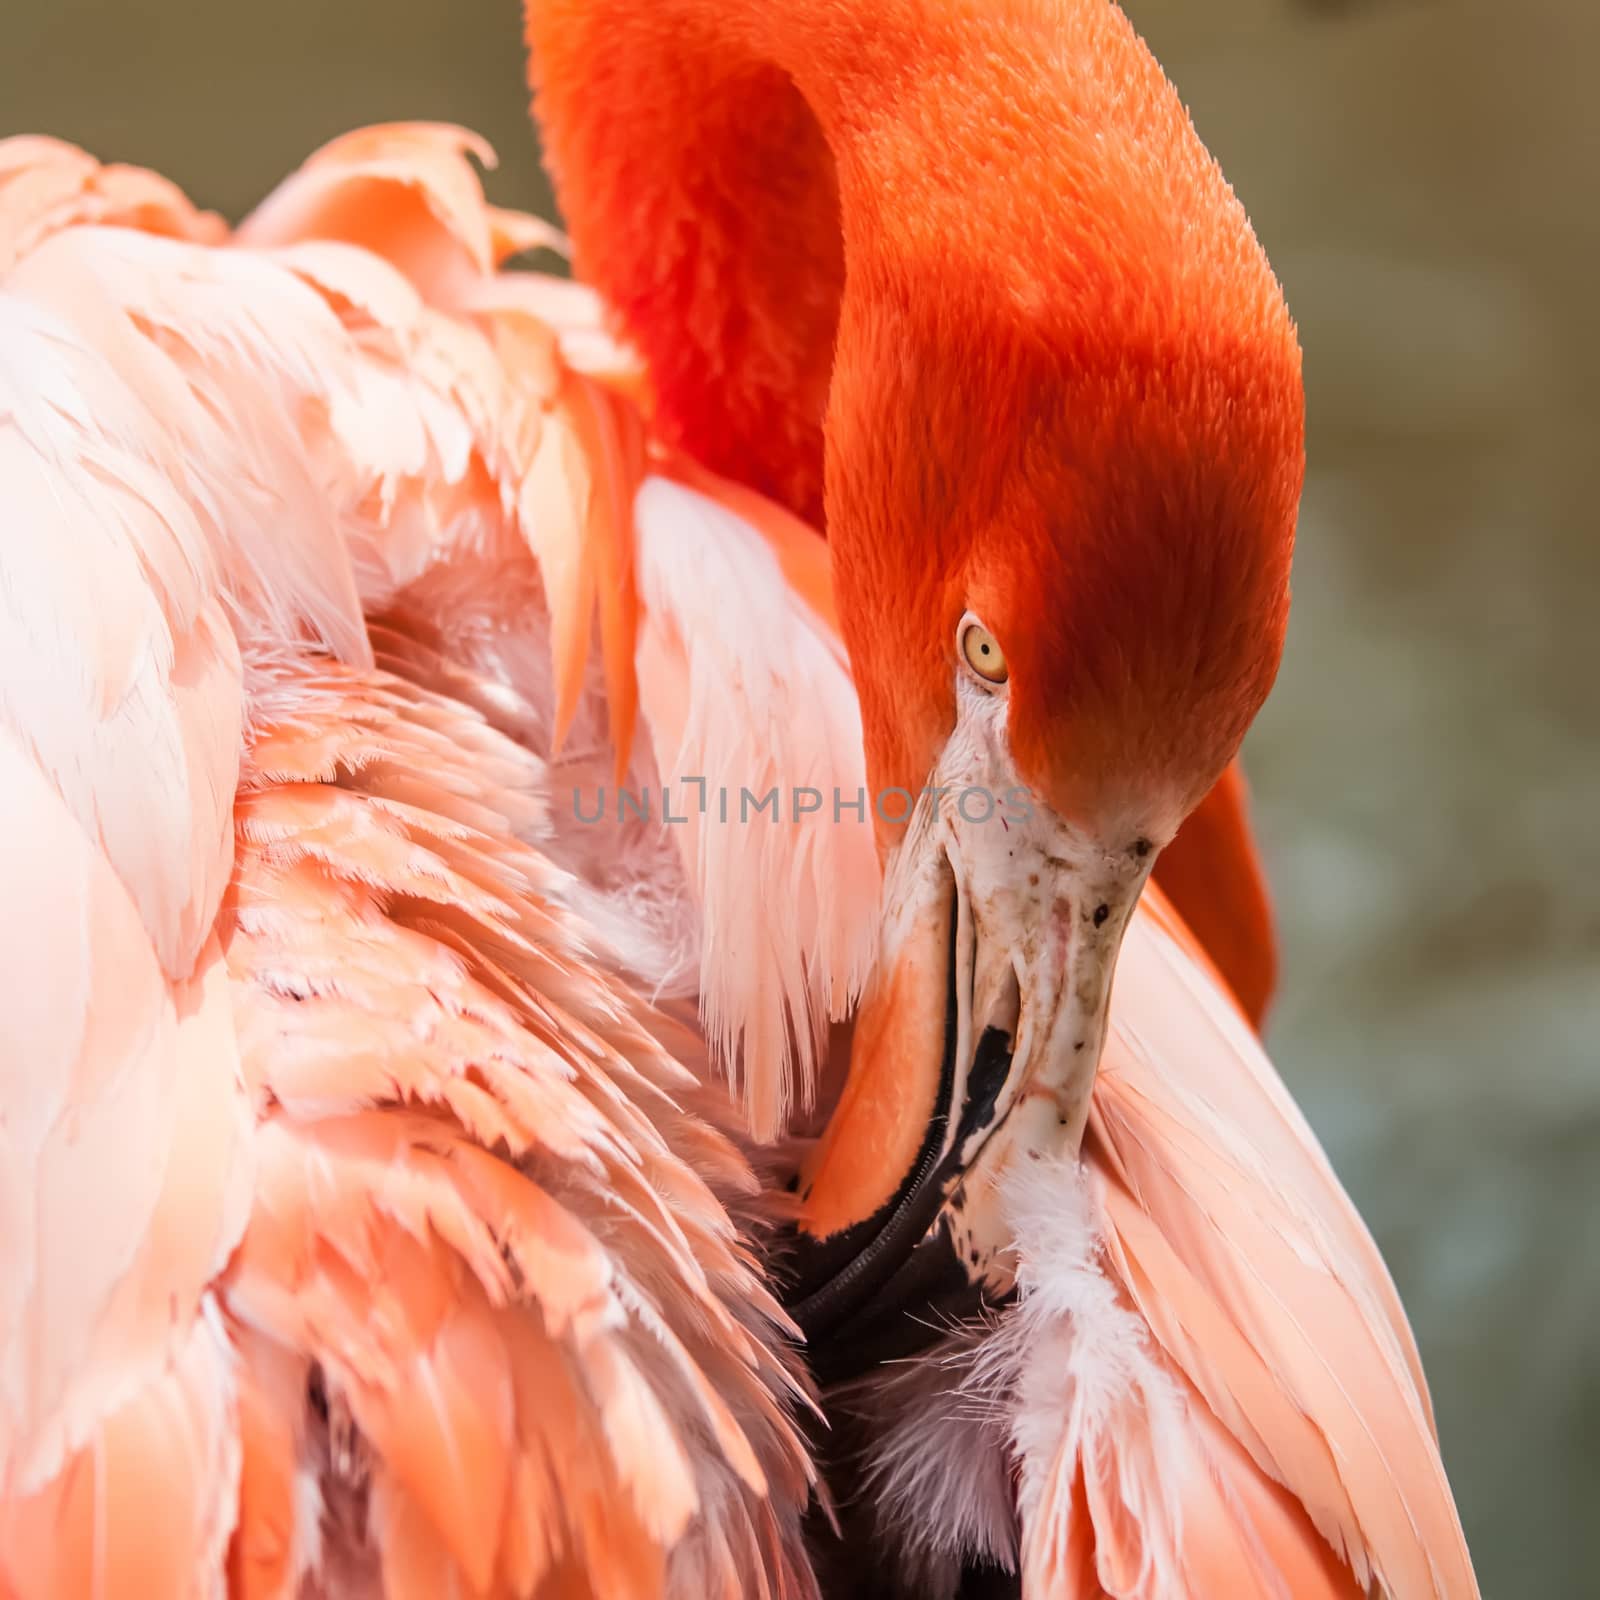 pink flamingo at a zoo